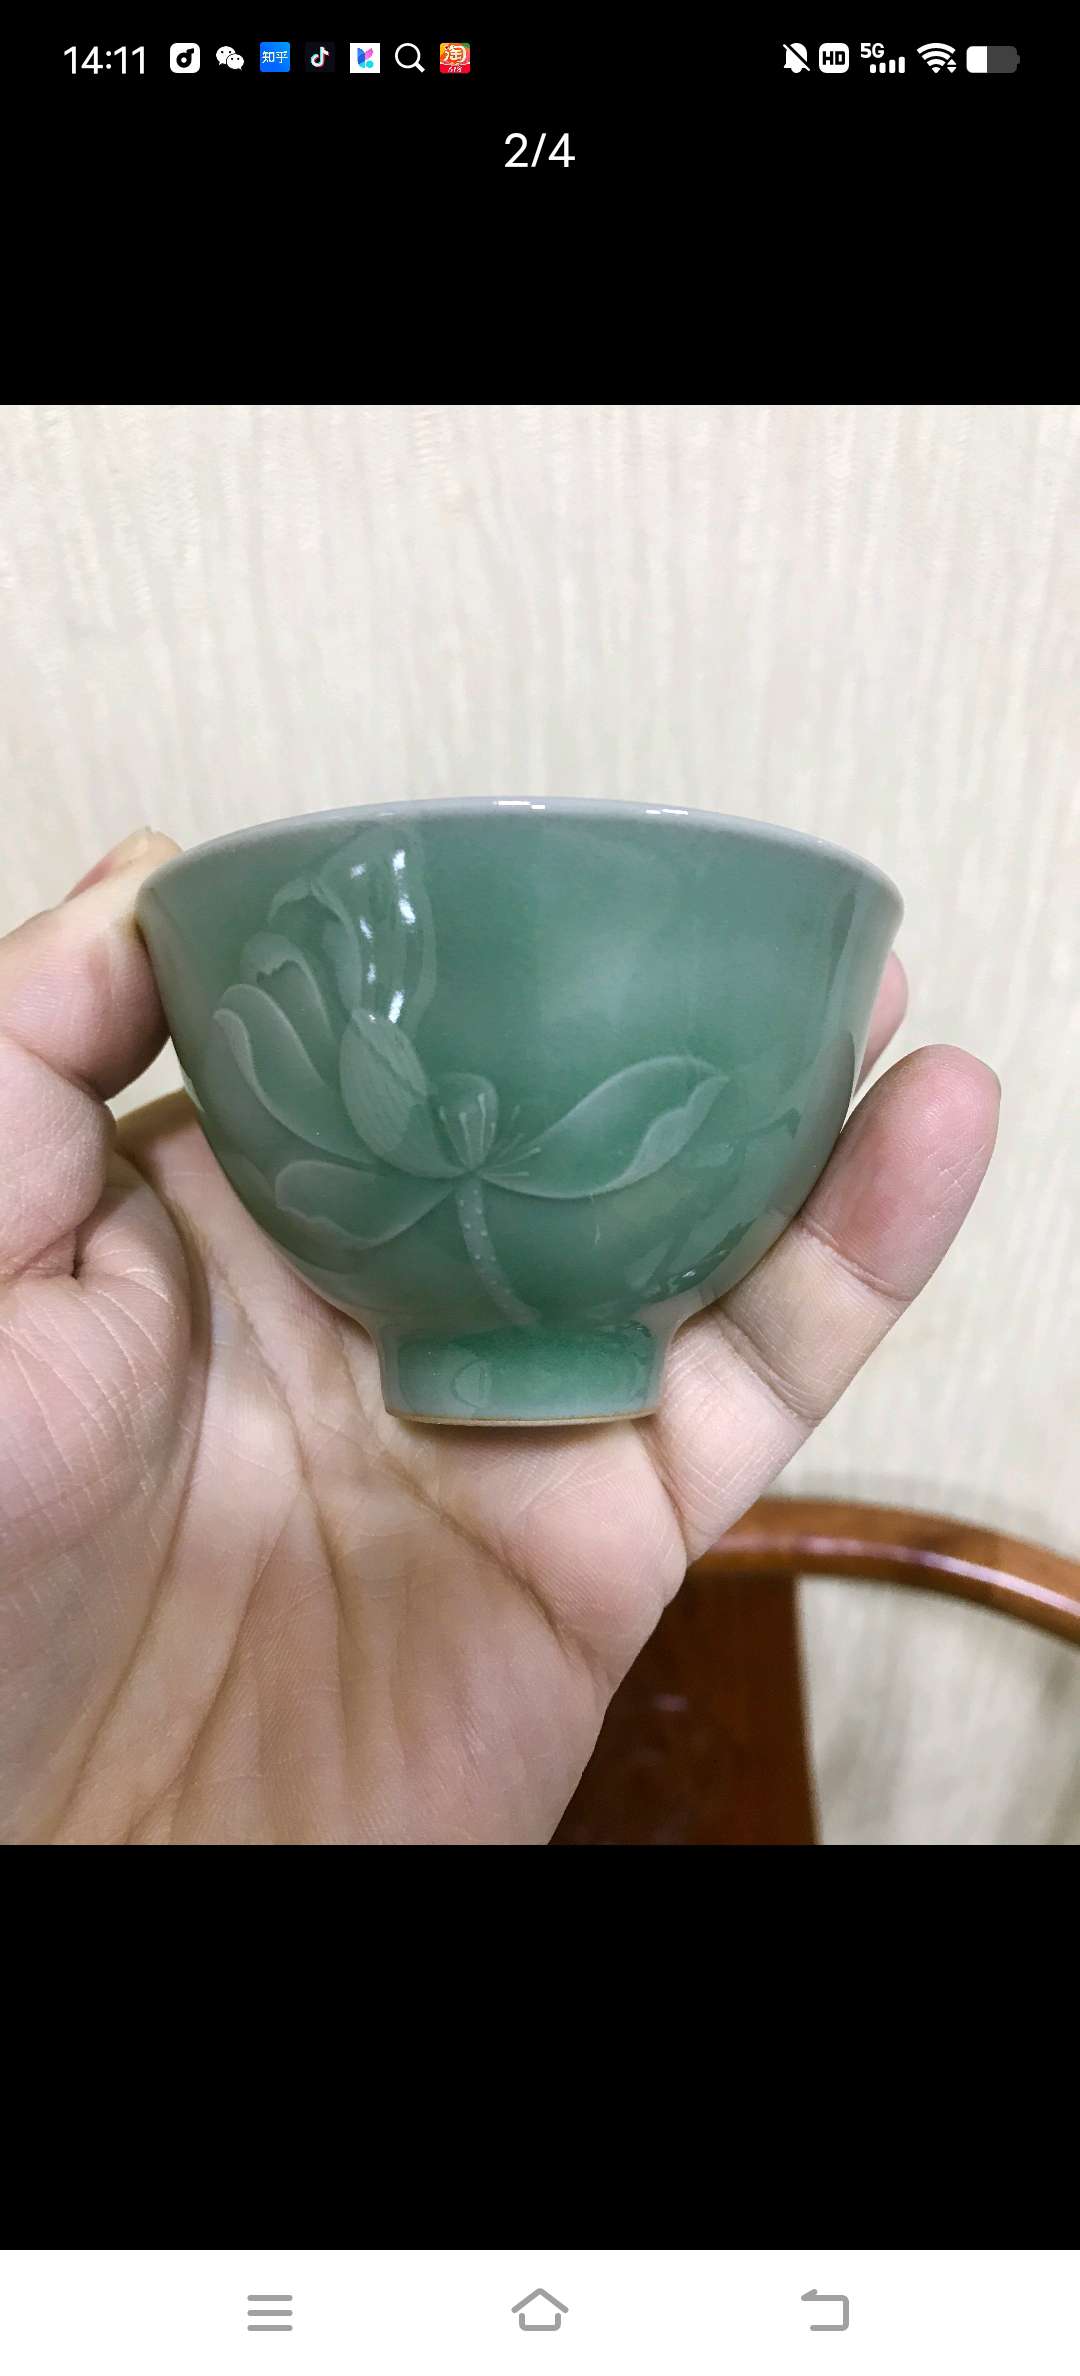 古法柴窯青瓷/茶具/龍泉青瓷茶杯产品图